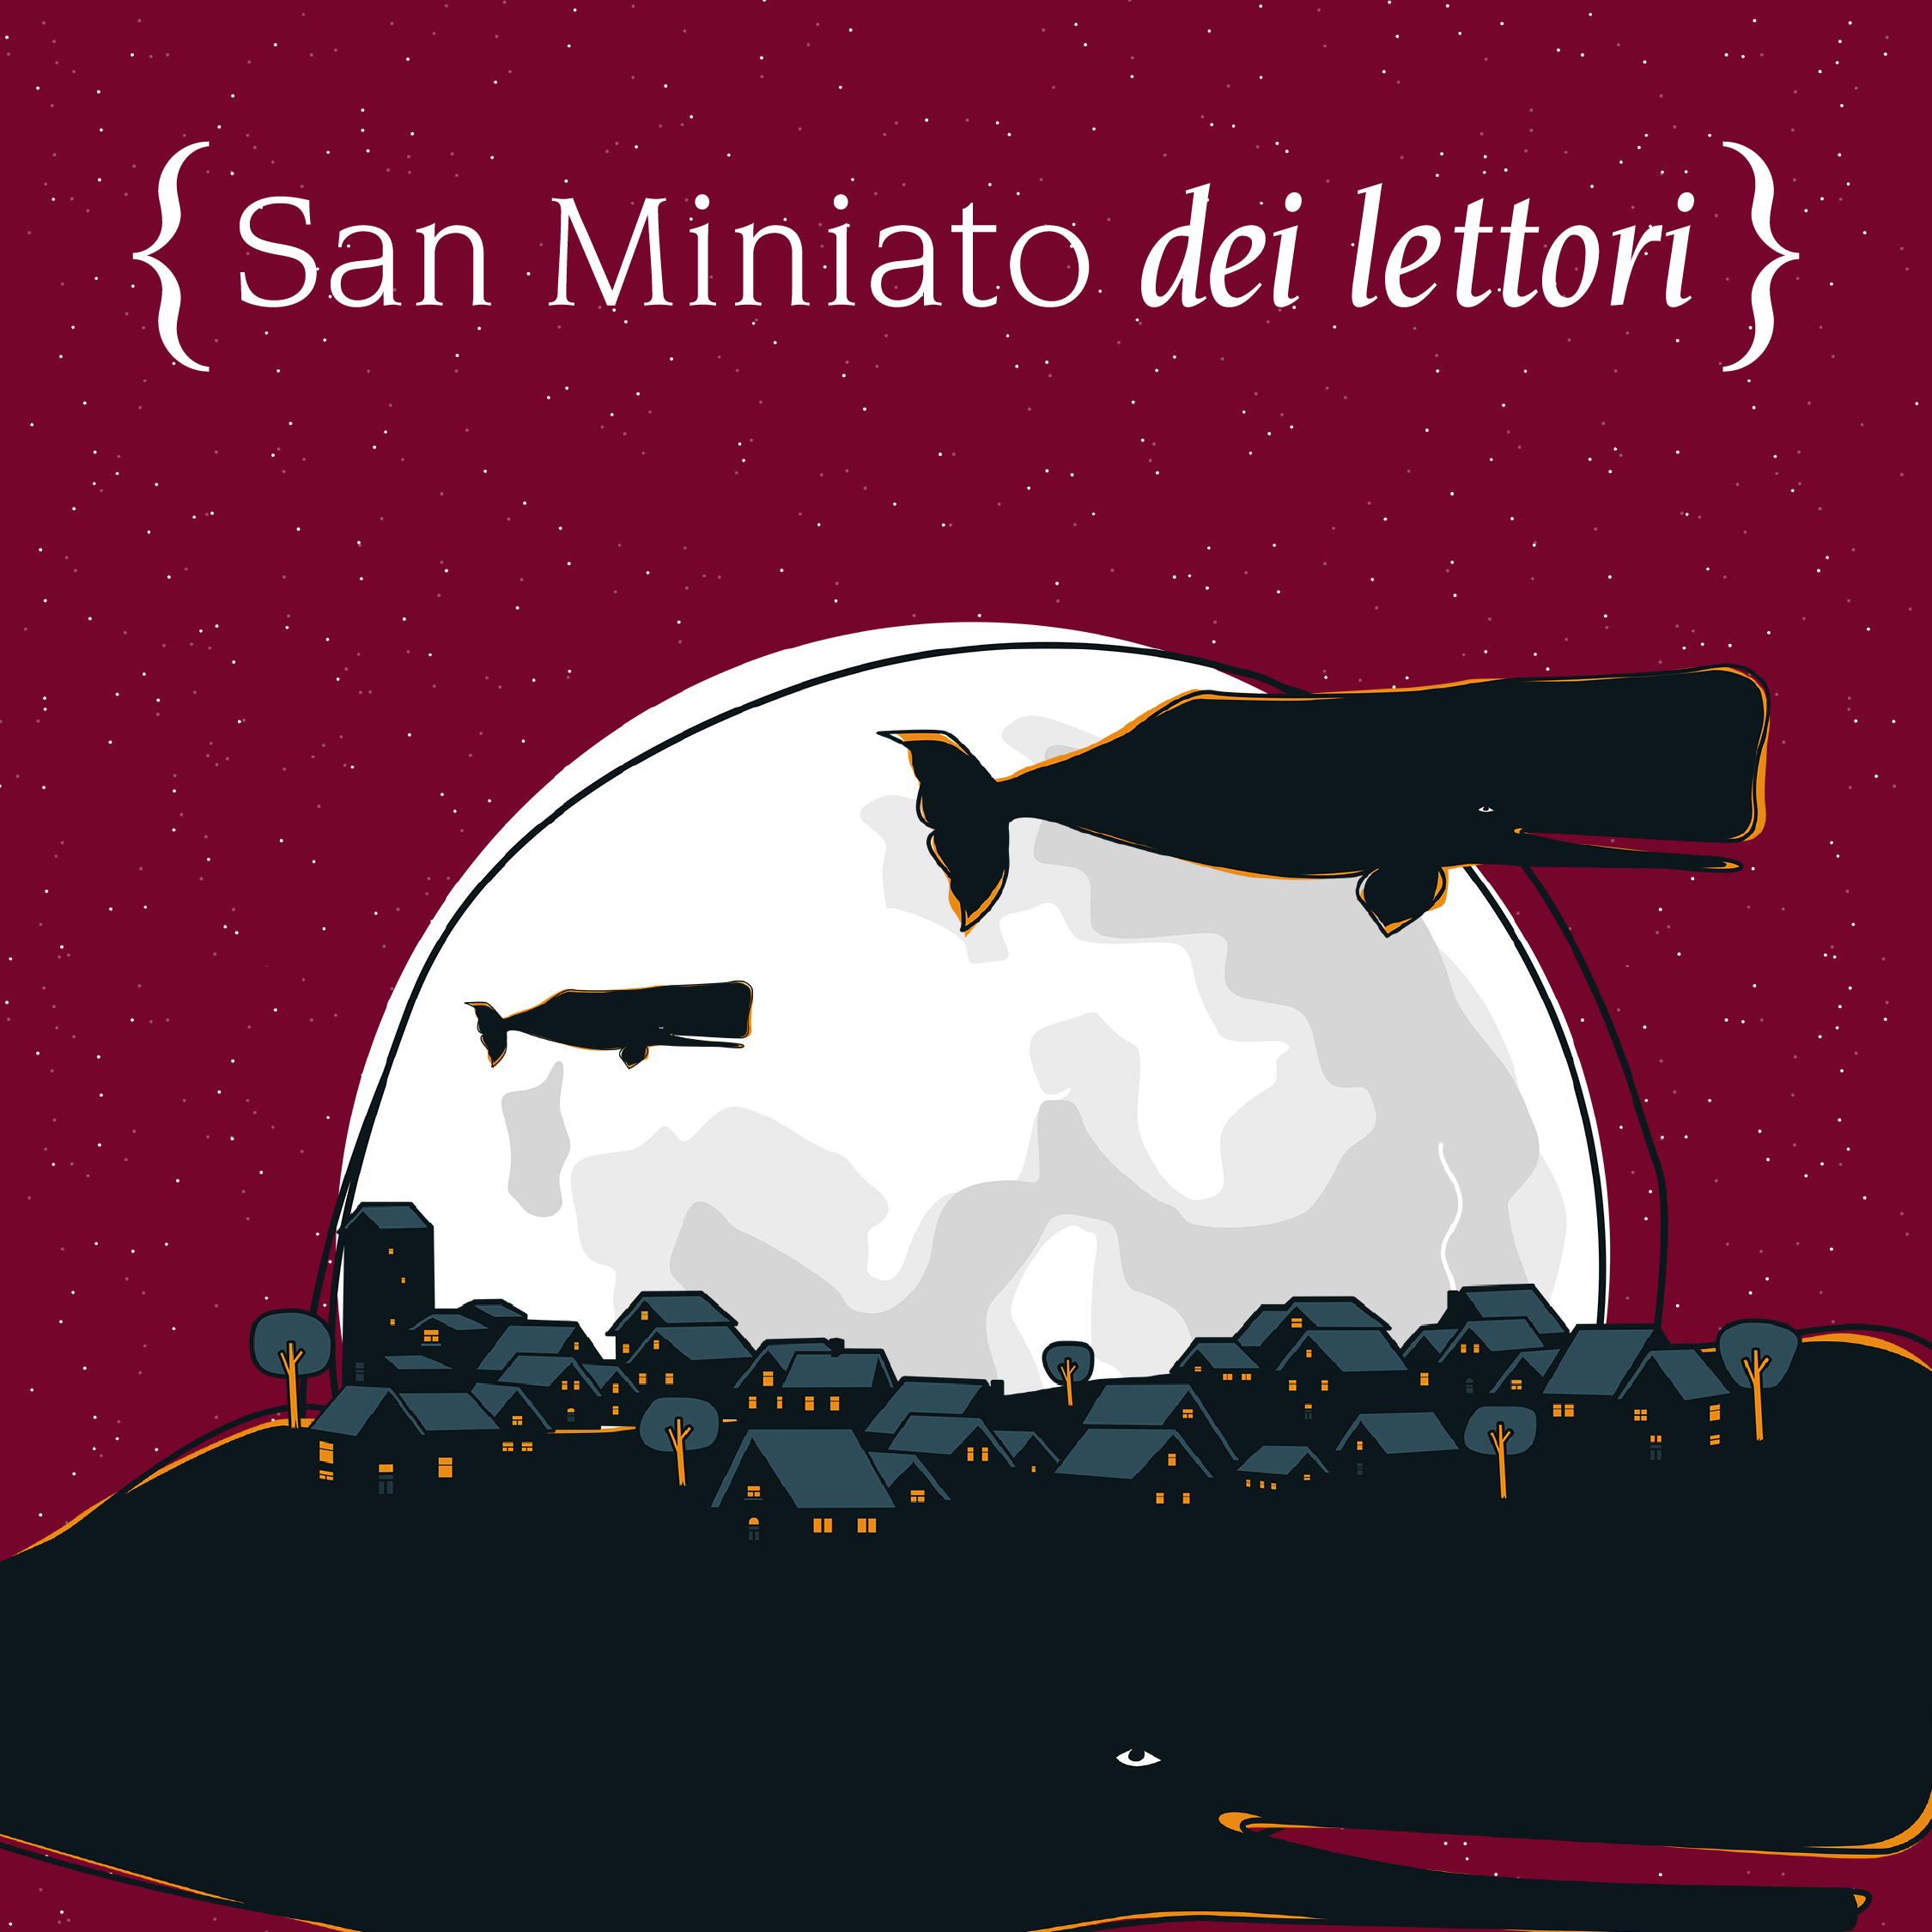 La poesia di Franco Arminio a San Miniato con “Sacro minore” - IL